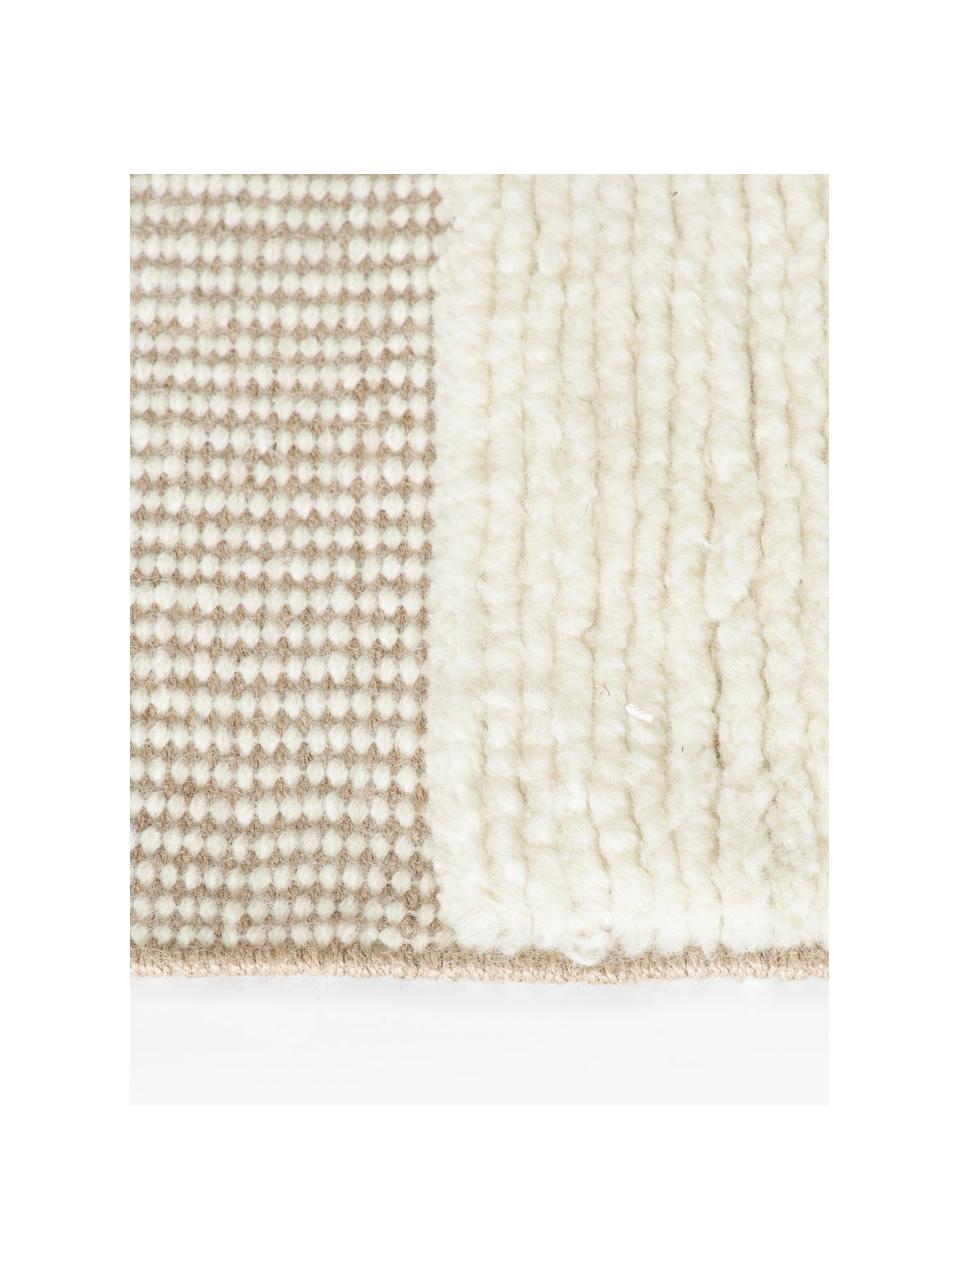 Handgewebter Teppich Laine mit Hoch-Tief-Muster und Fransen, 57% Wolle (RWS-zertifiziert), 35% Jute, 8% Baumwolle, Beige, Cremeweiß, B 120 x L 180 cm (Größe S)